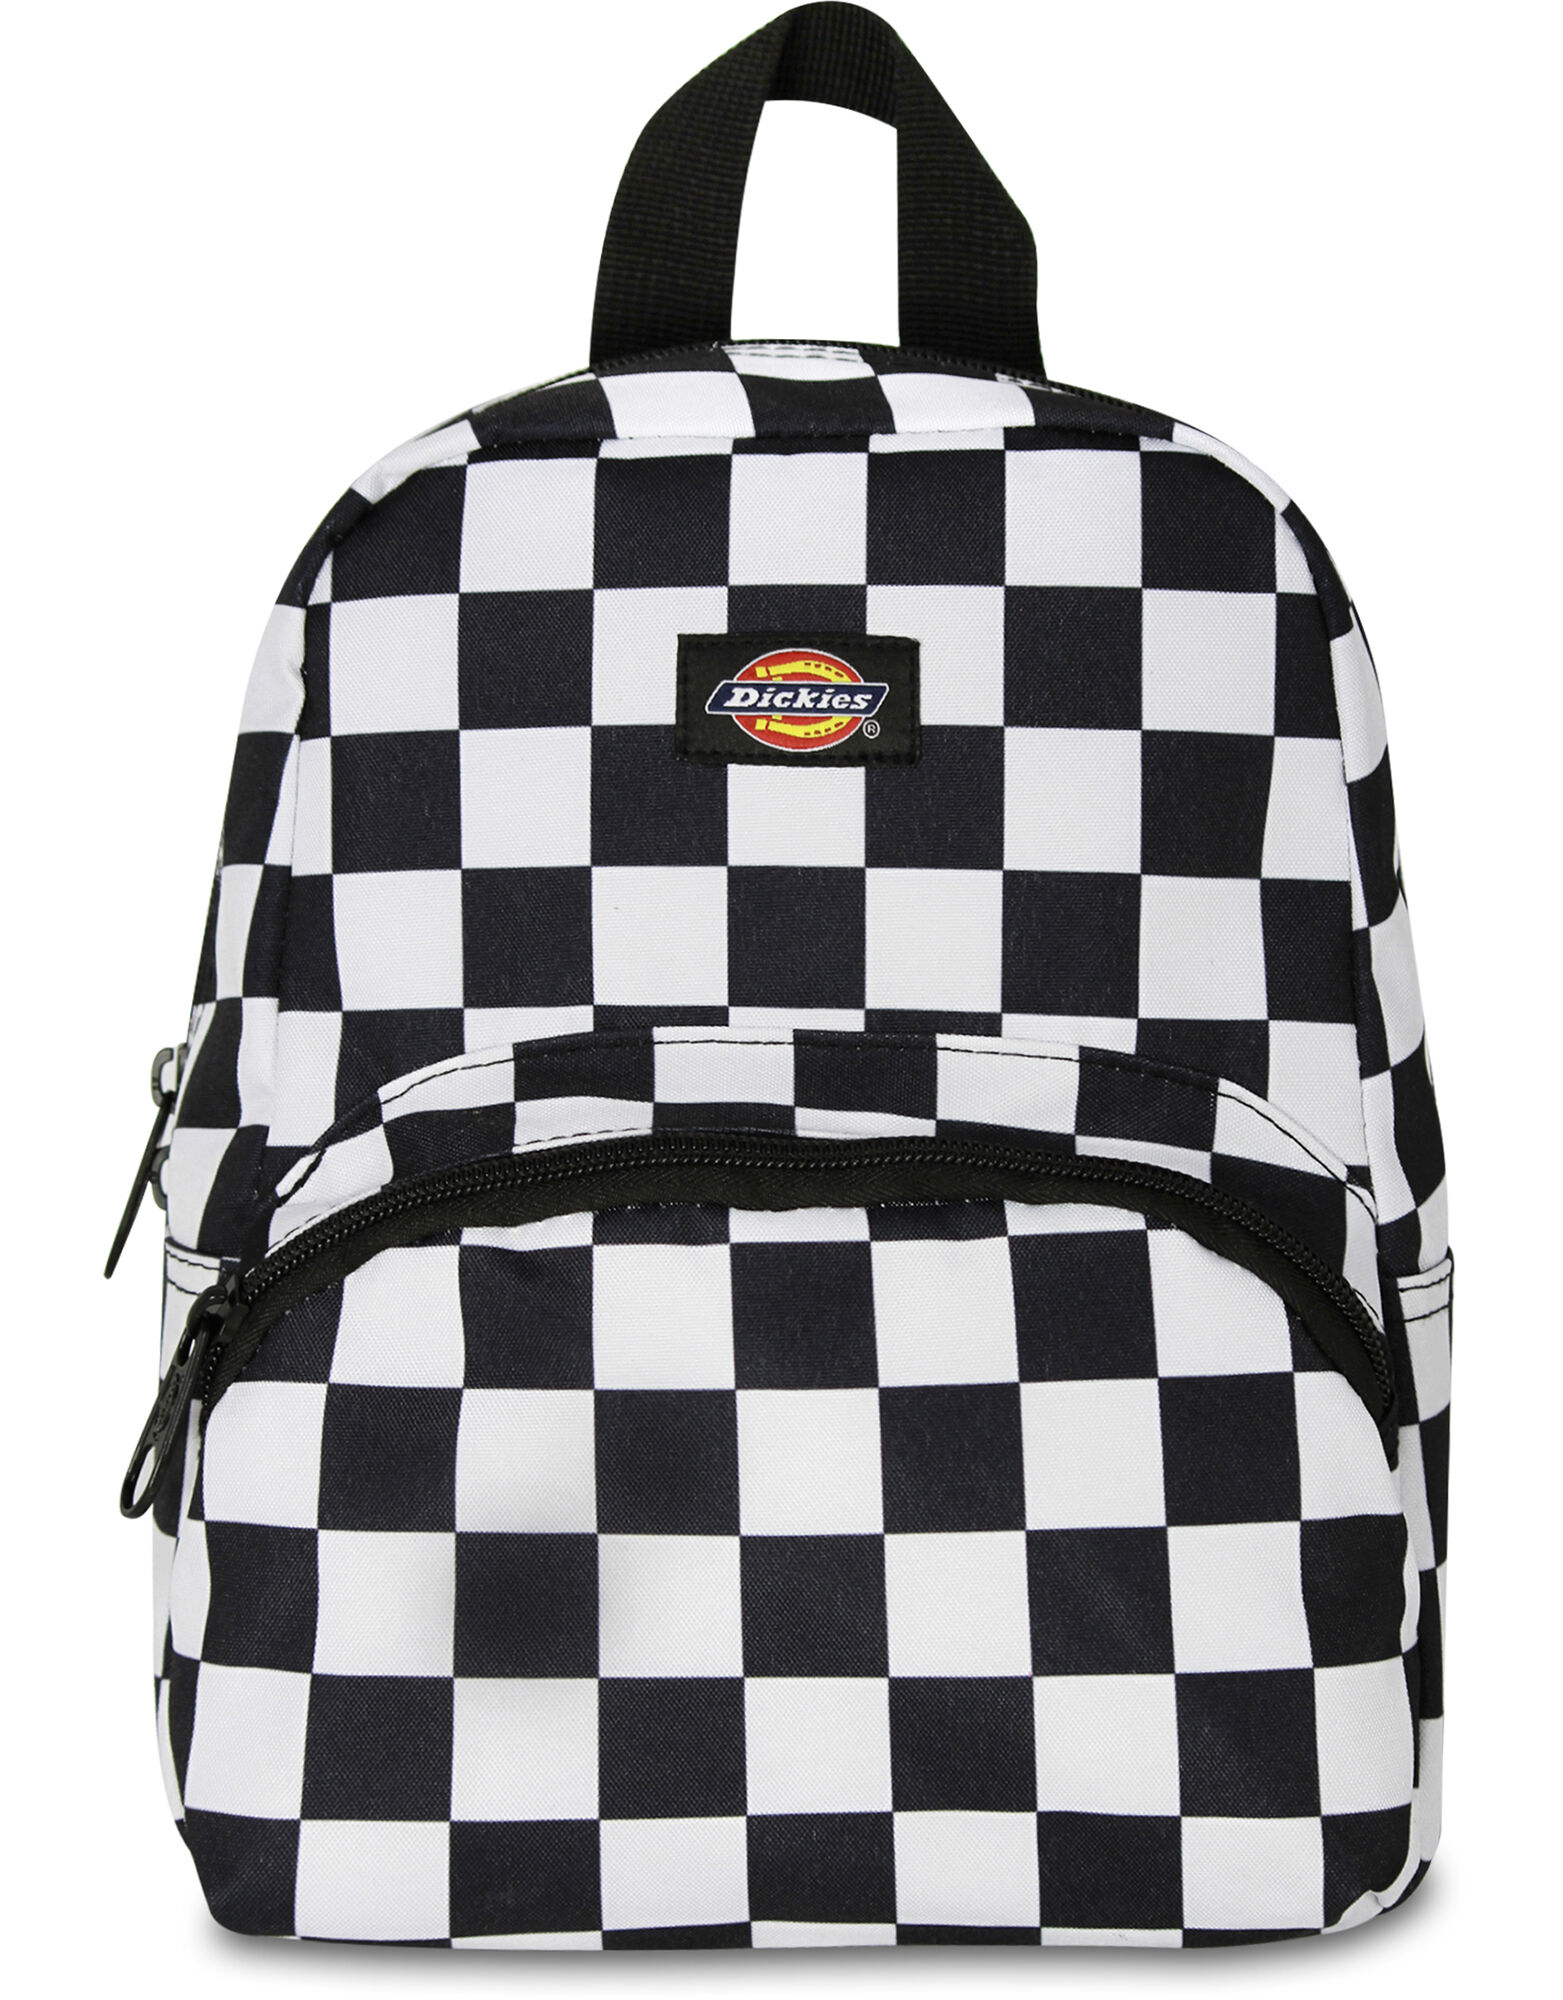 black and white mini backpack